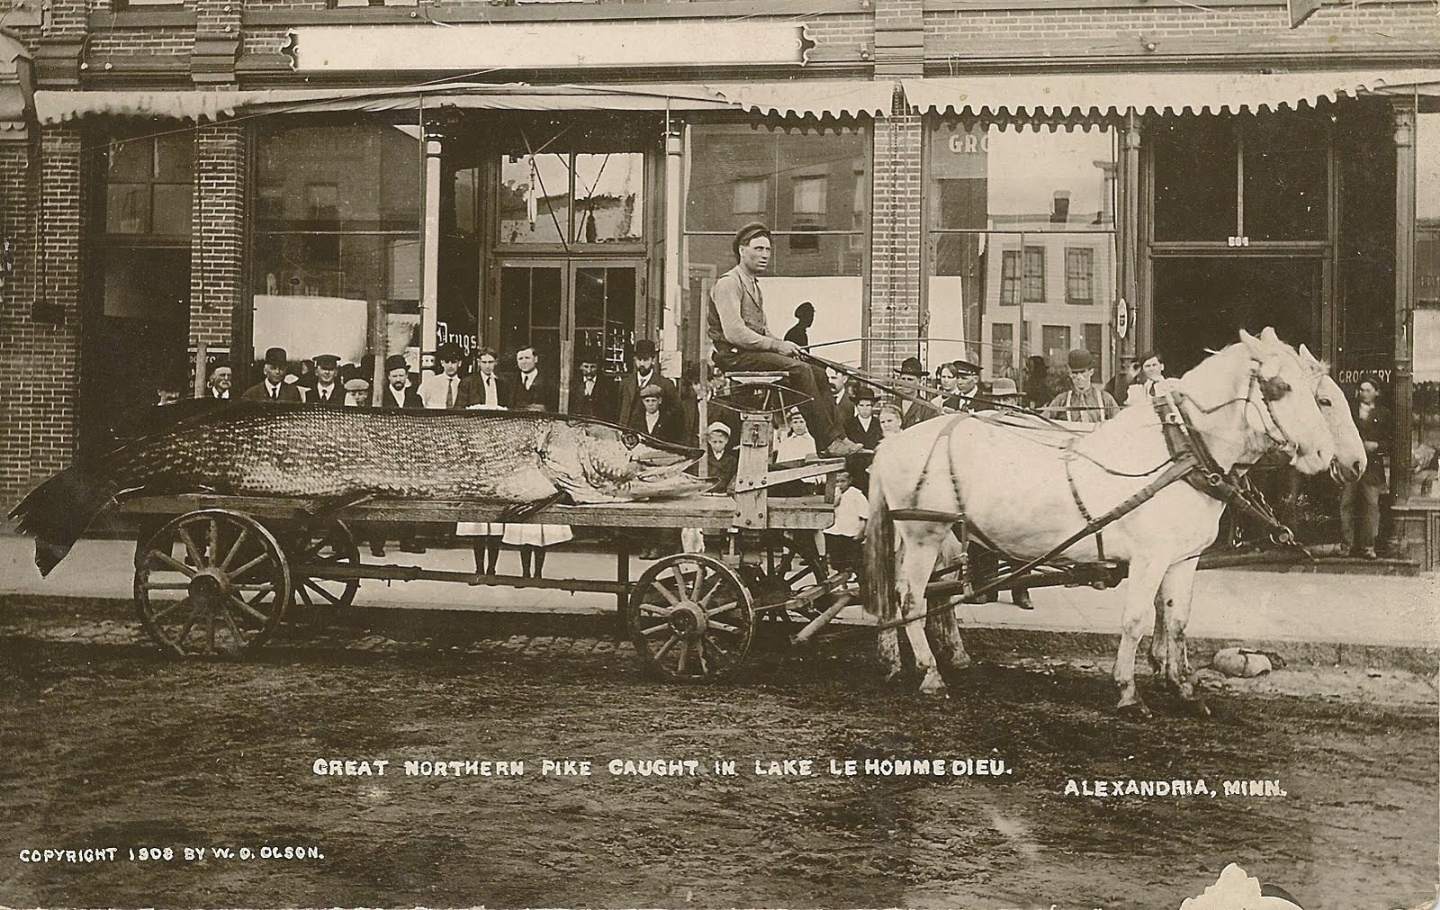 luccio gigantesco catturato nel 1908 in Minnesota